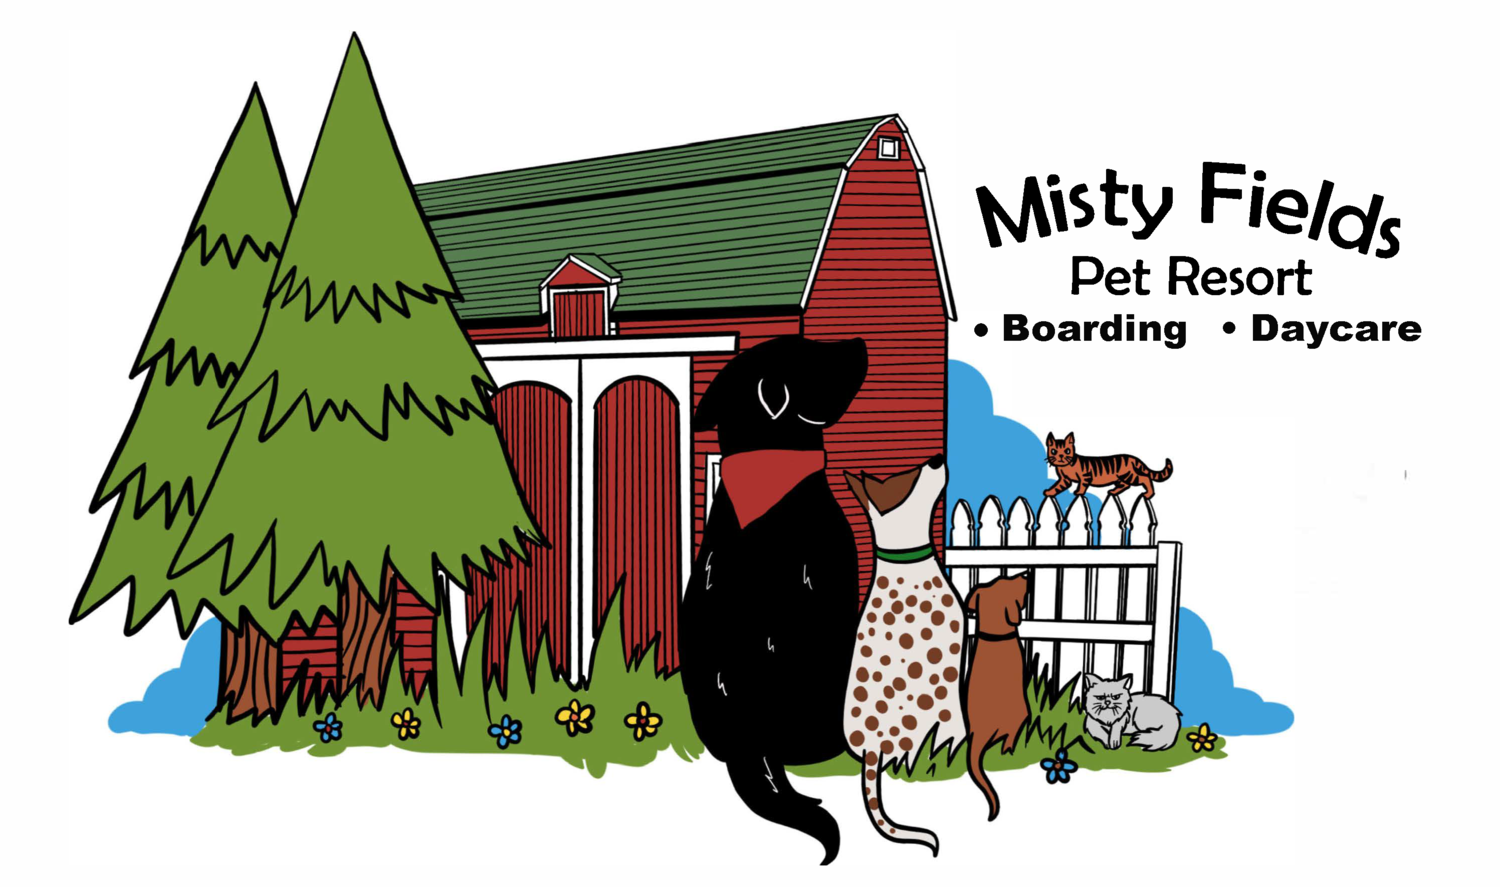 Misty Fields Pet Resort